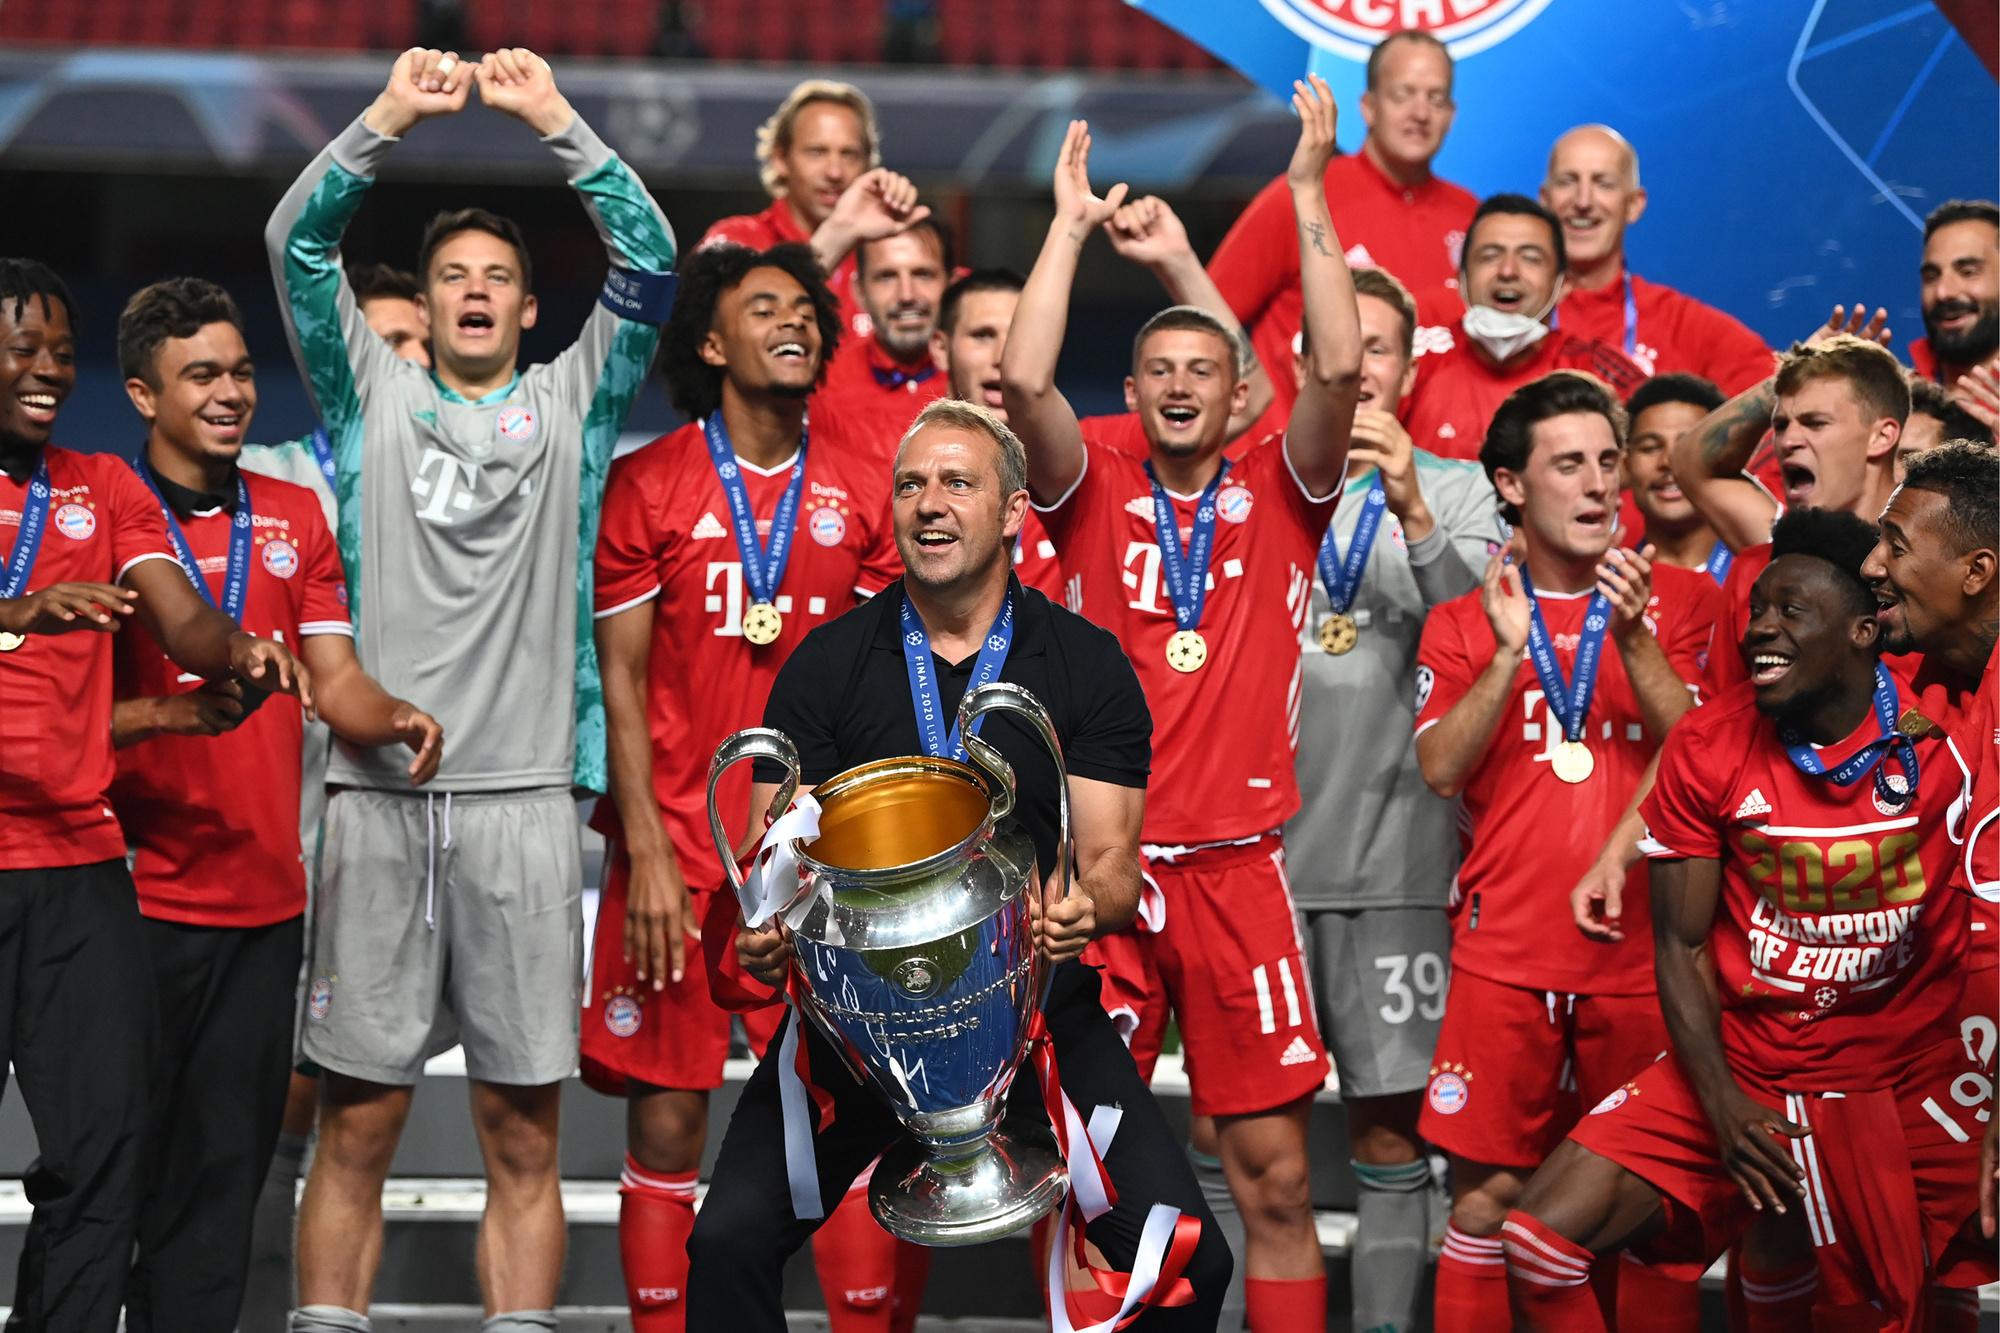 Bayerncoach Hansi Flick: 'Succes is een voortdurend proces'